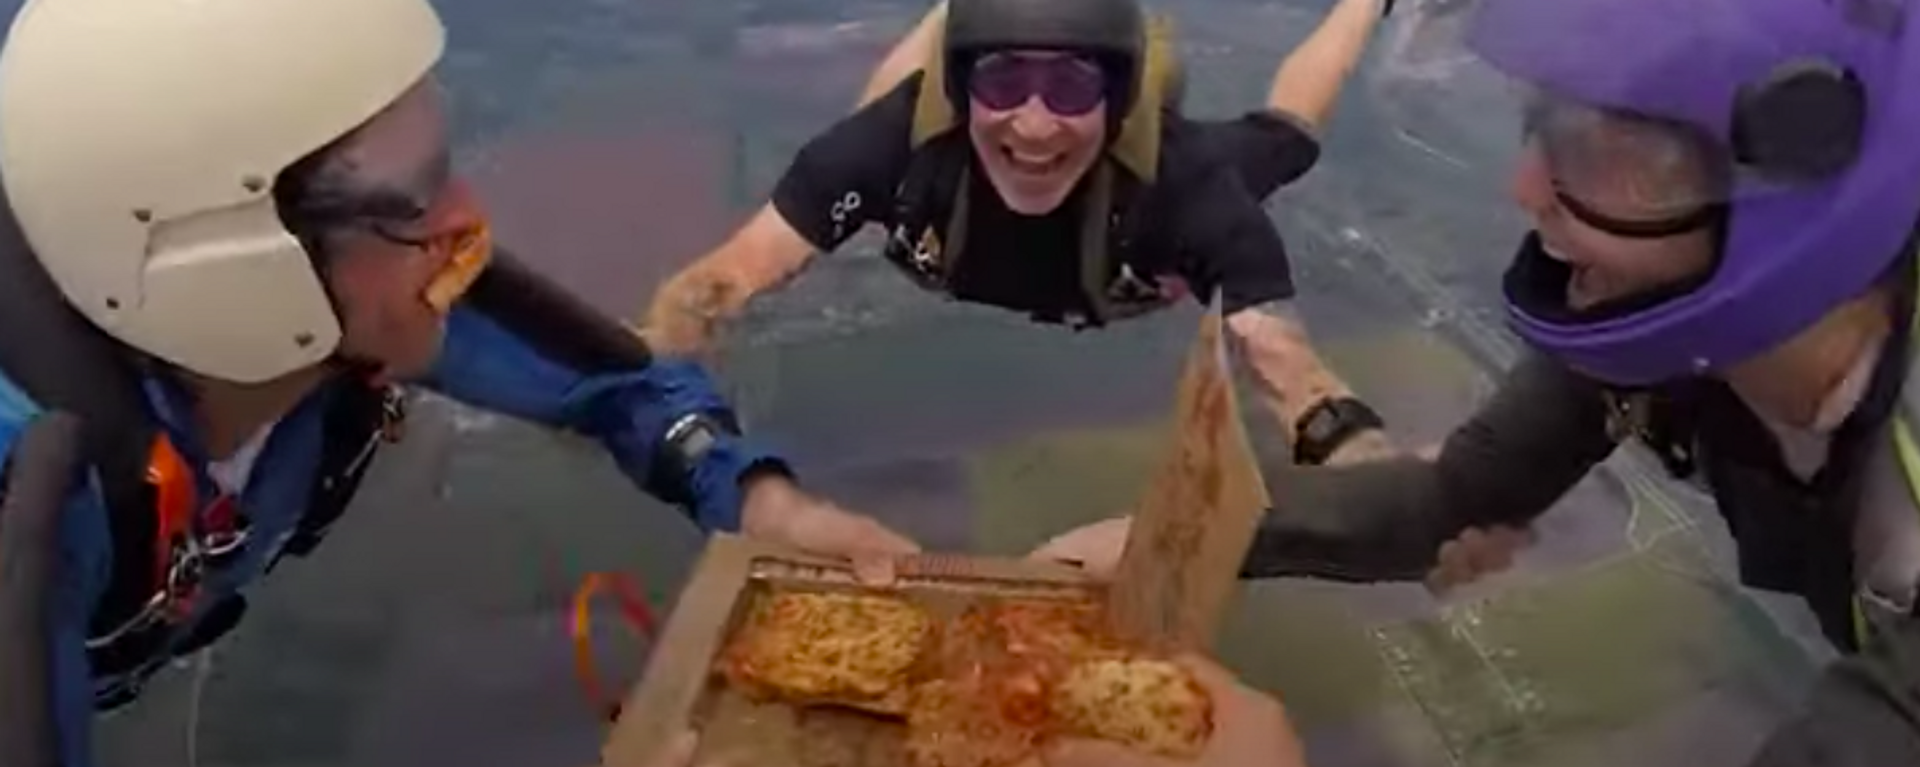 Unos paracaidistas comen una pizza mientras caen de más de 4.000 metros - Sputnik Mundo, 1920, 26.02.2021